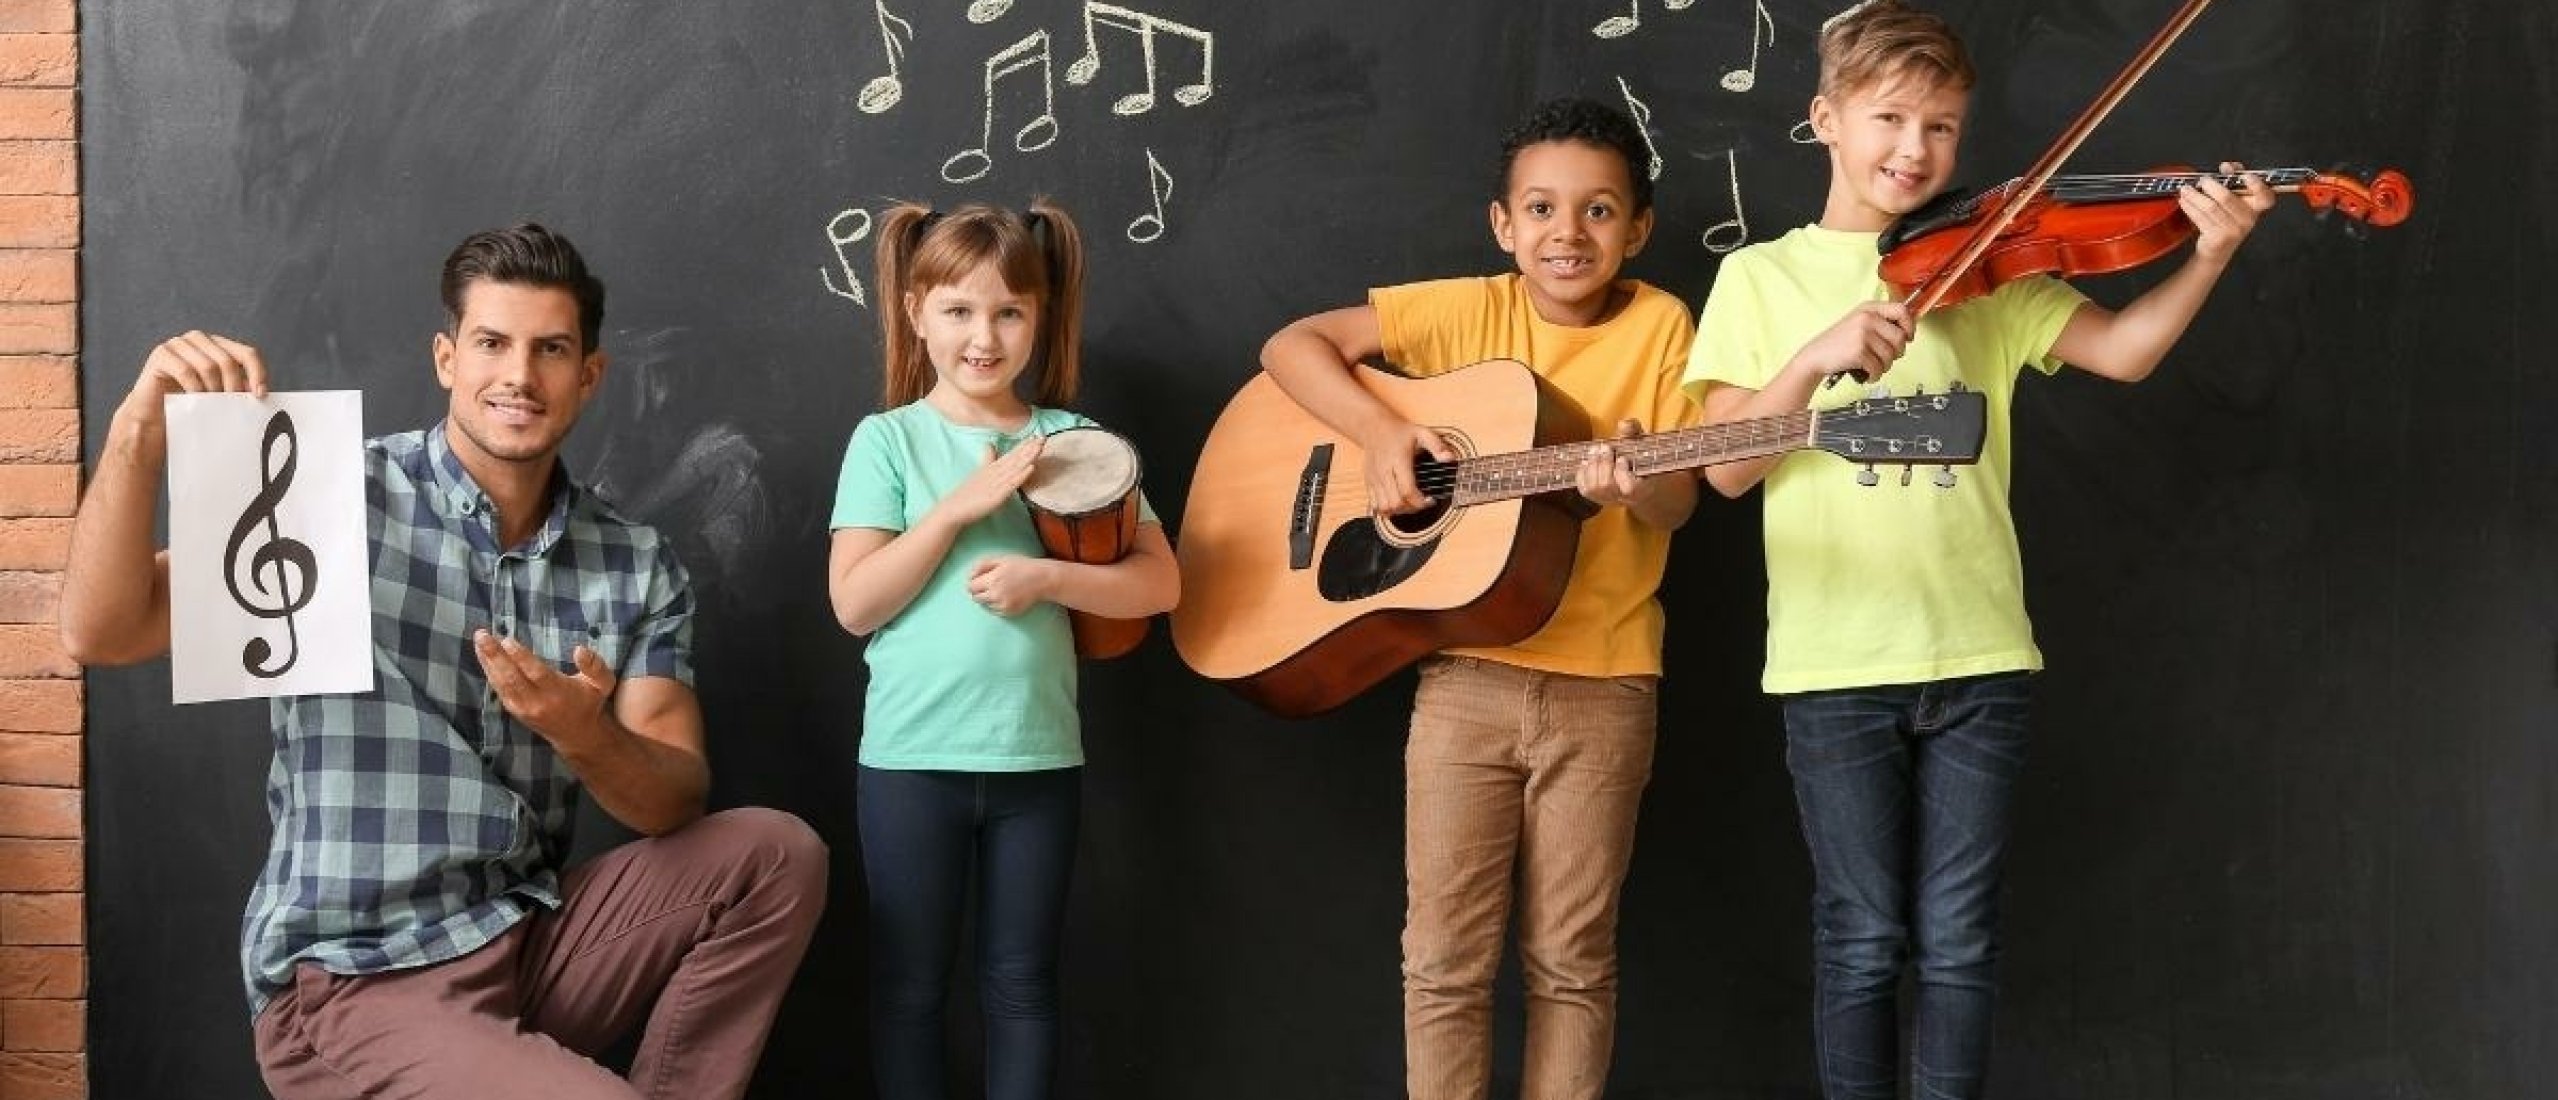 Vacature Muziekdocent Primair Onderwijs